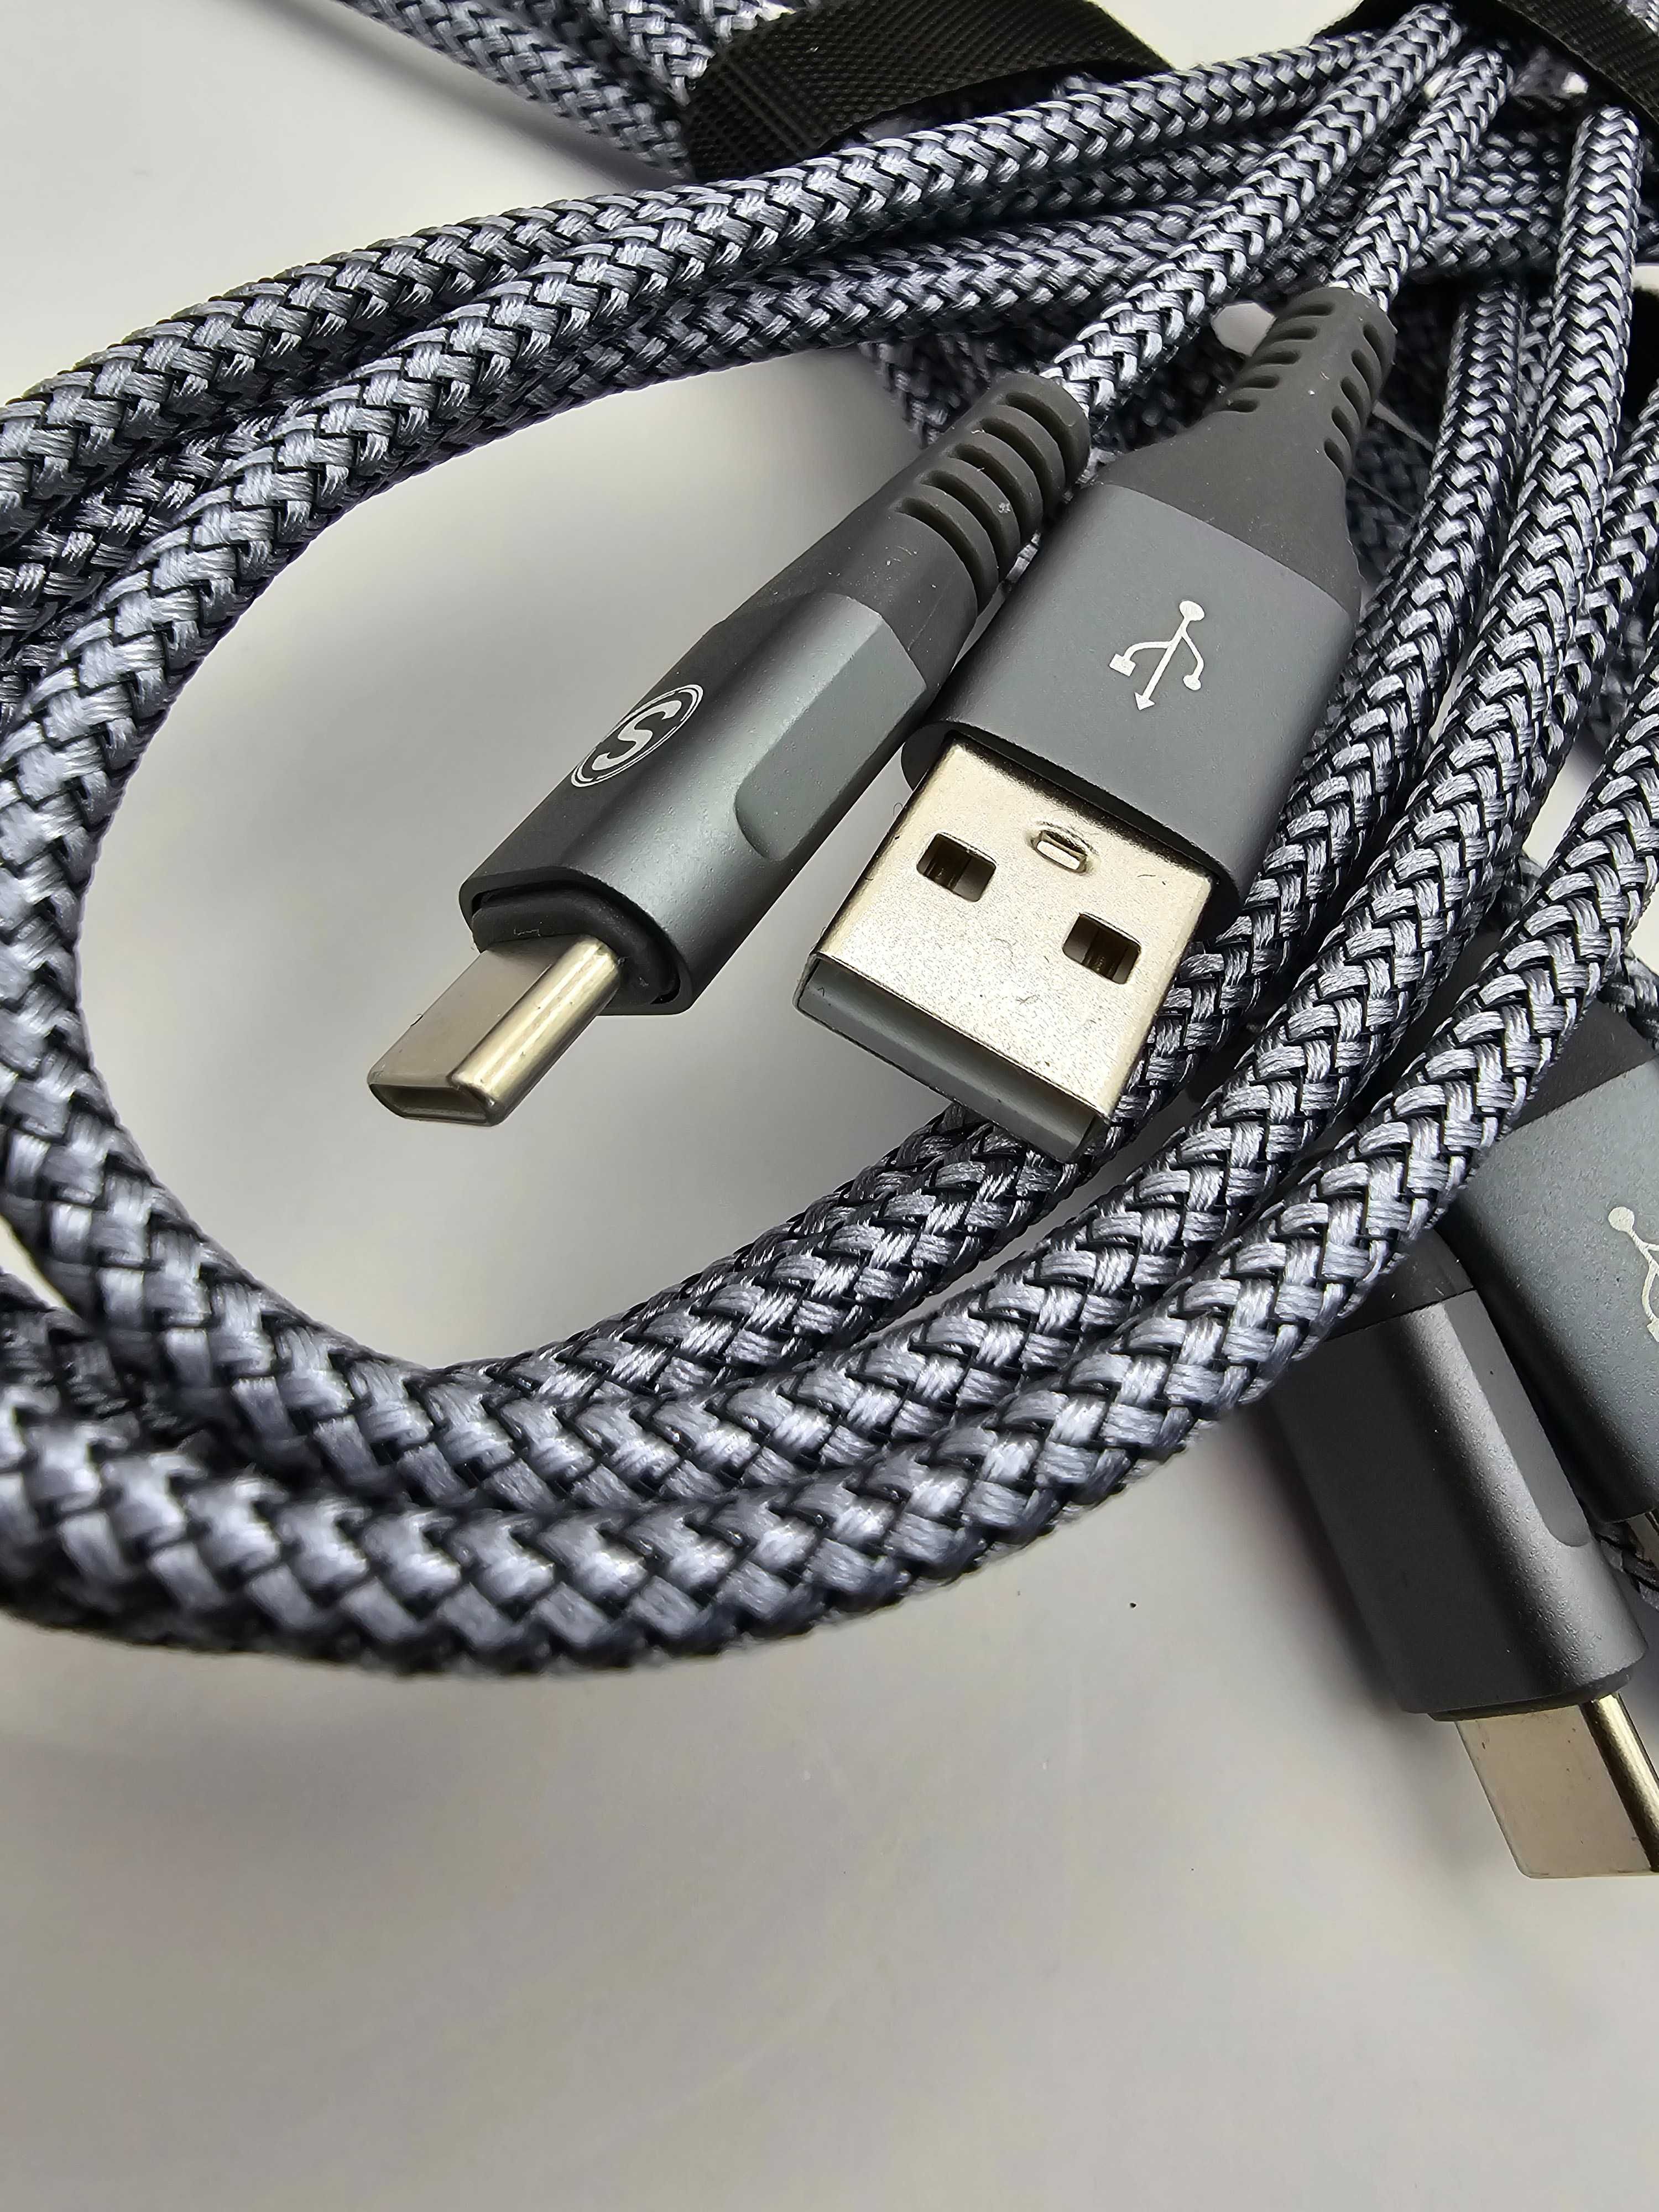 2x 3 metrowy kabel typ C do USB 3.0 Nylon & Braided szary